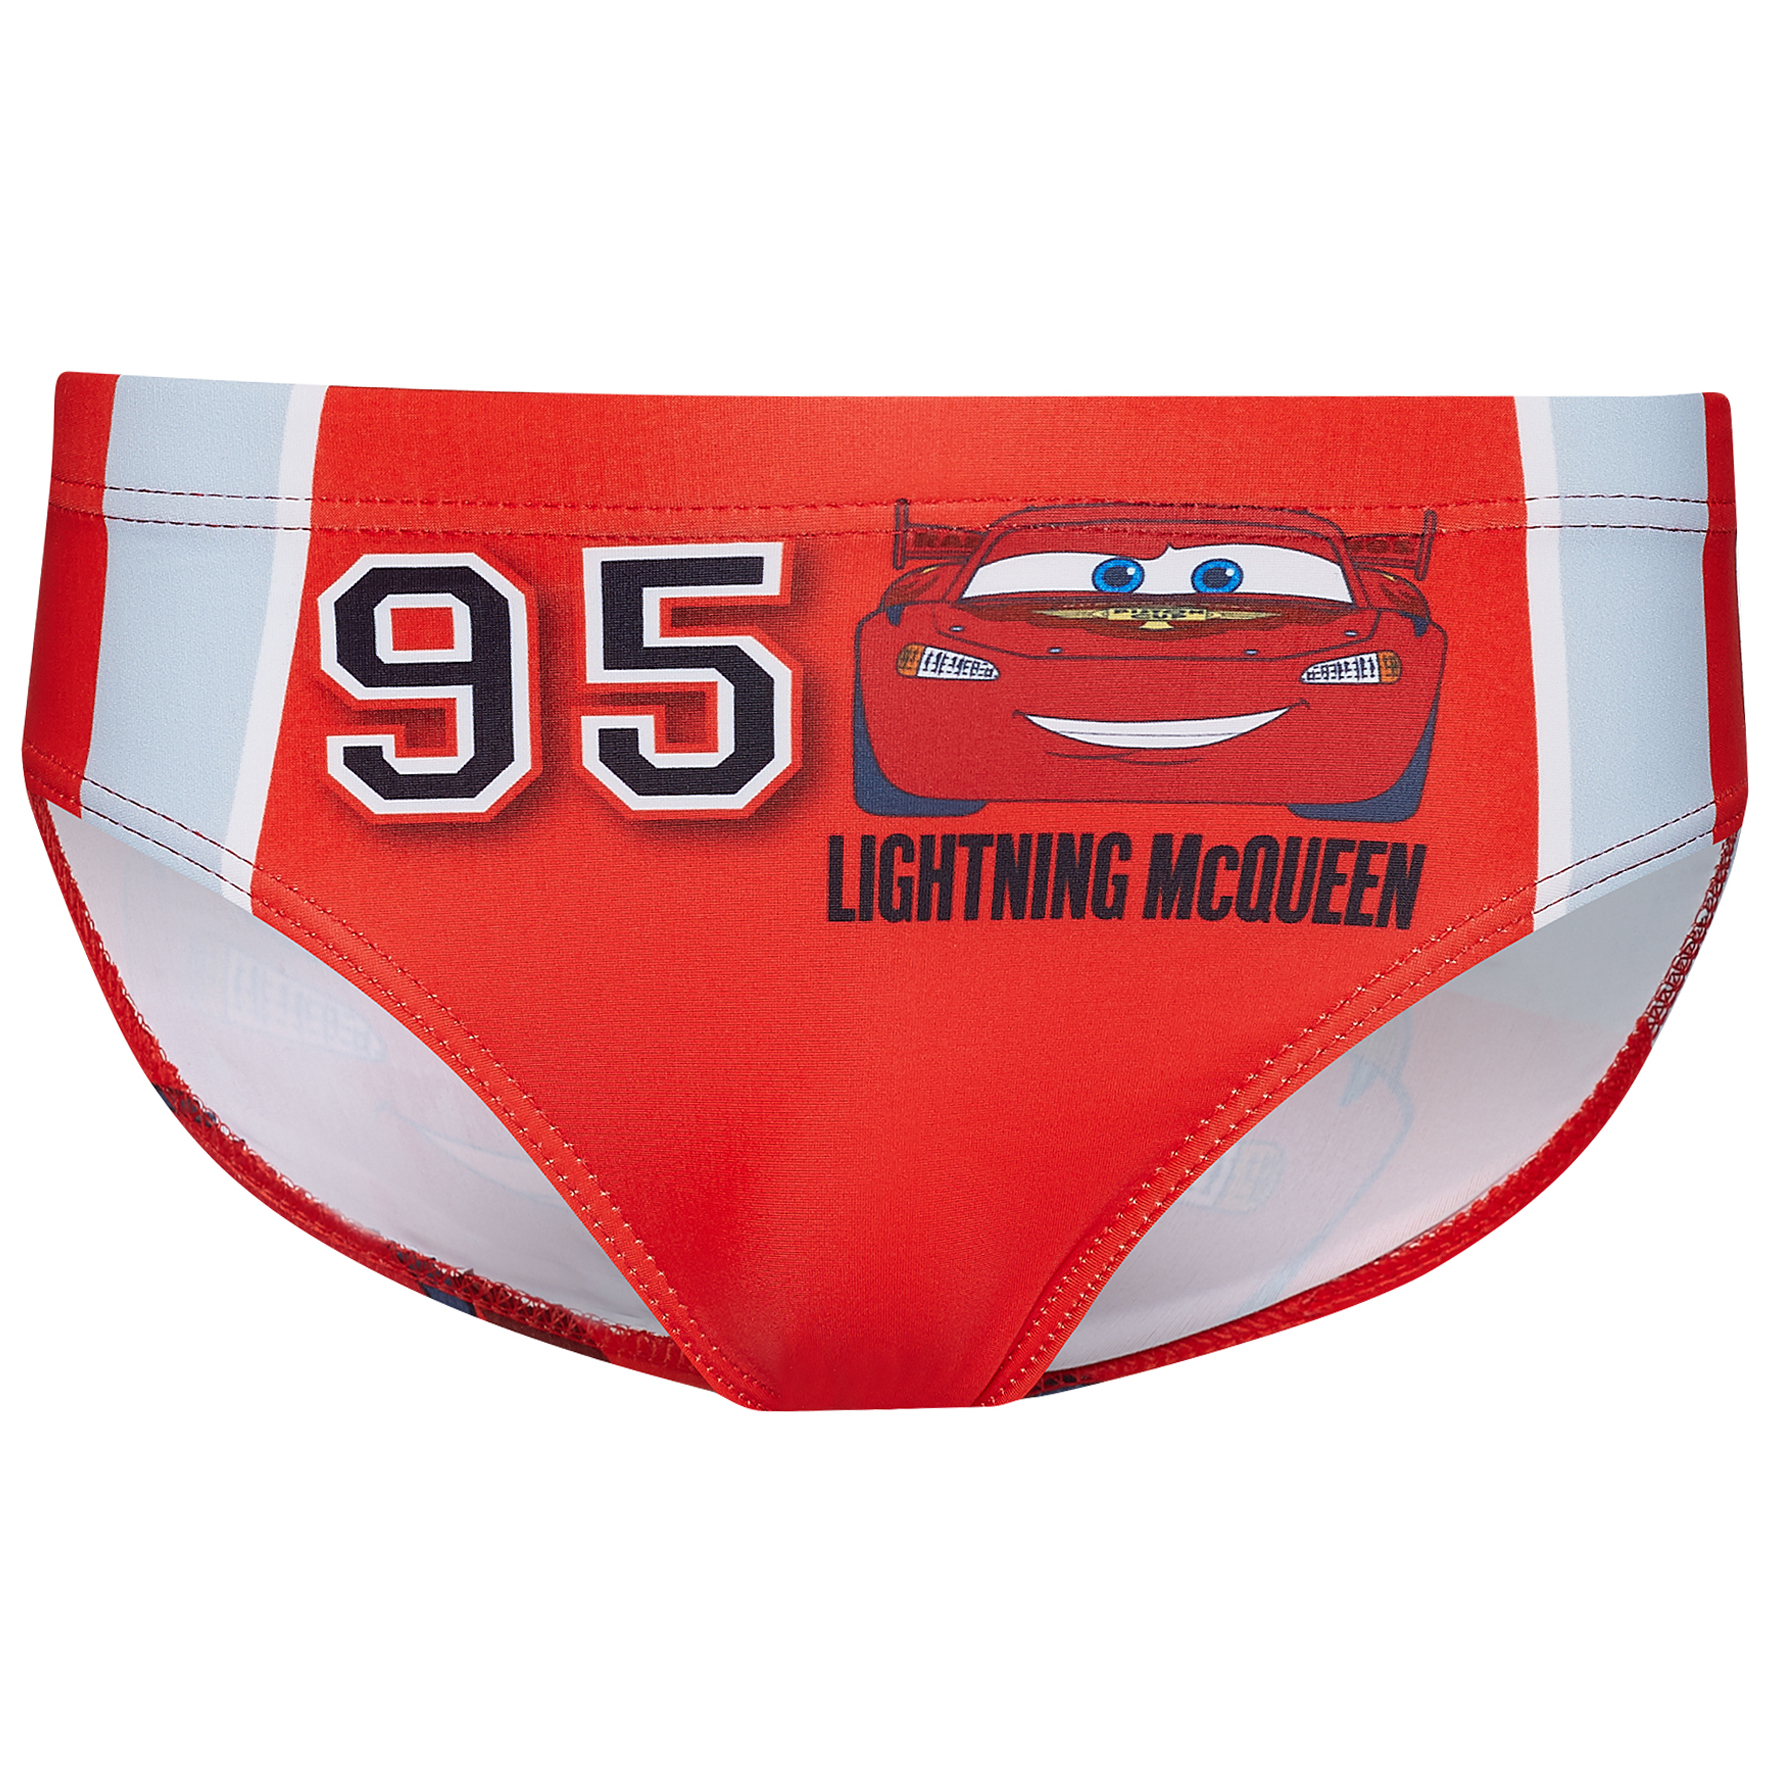 Shop Lightning Mcqueen Underwear online